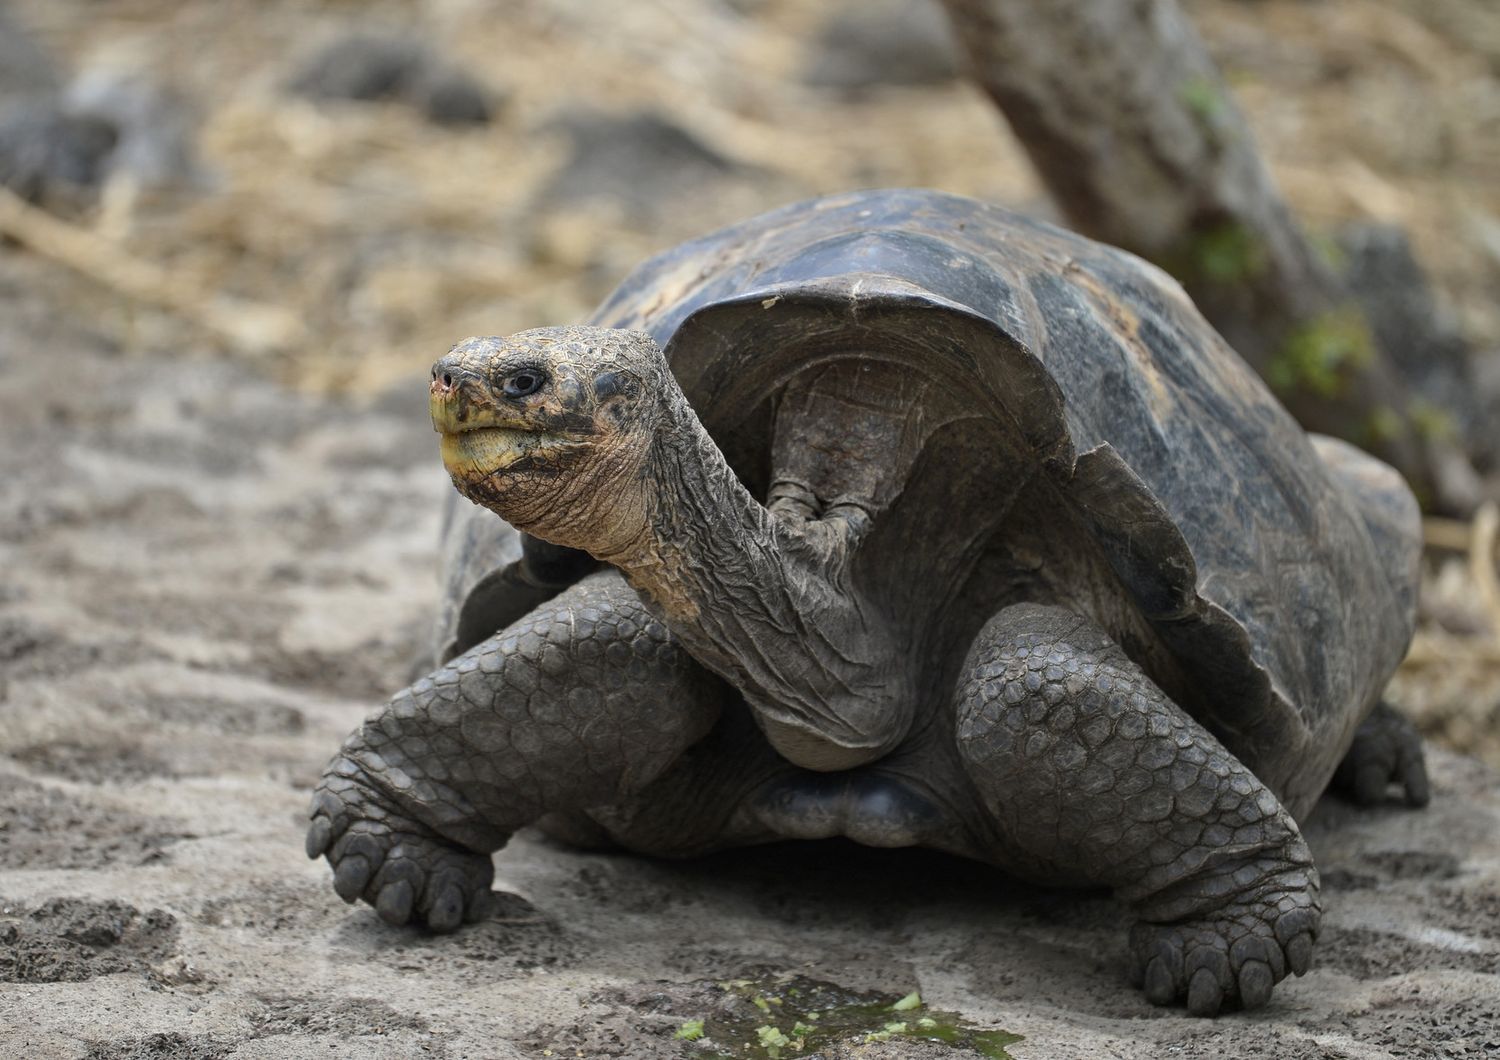 Isole Galapagos: una delle tartarughe giganti custodite nella riserva naturale dell'arcipelago